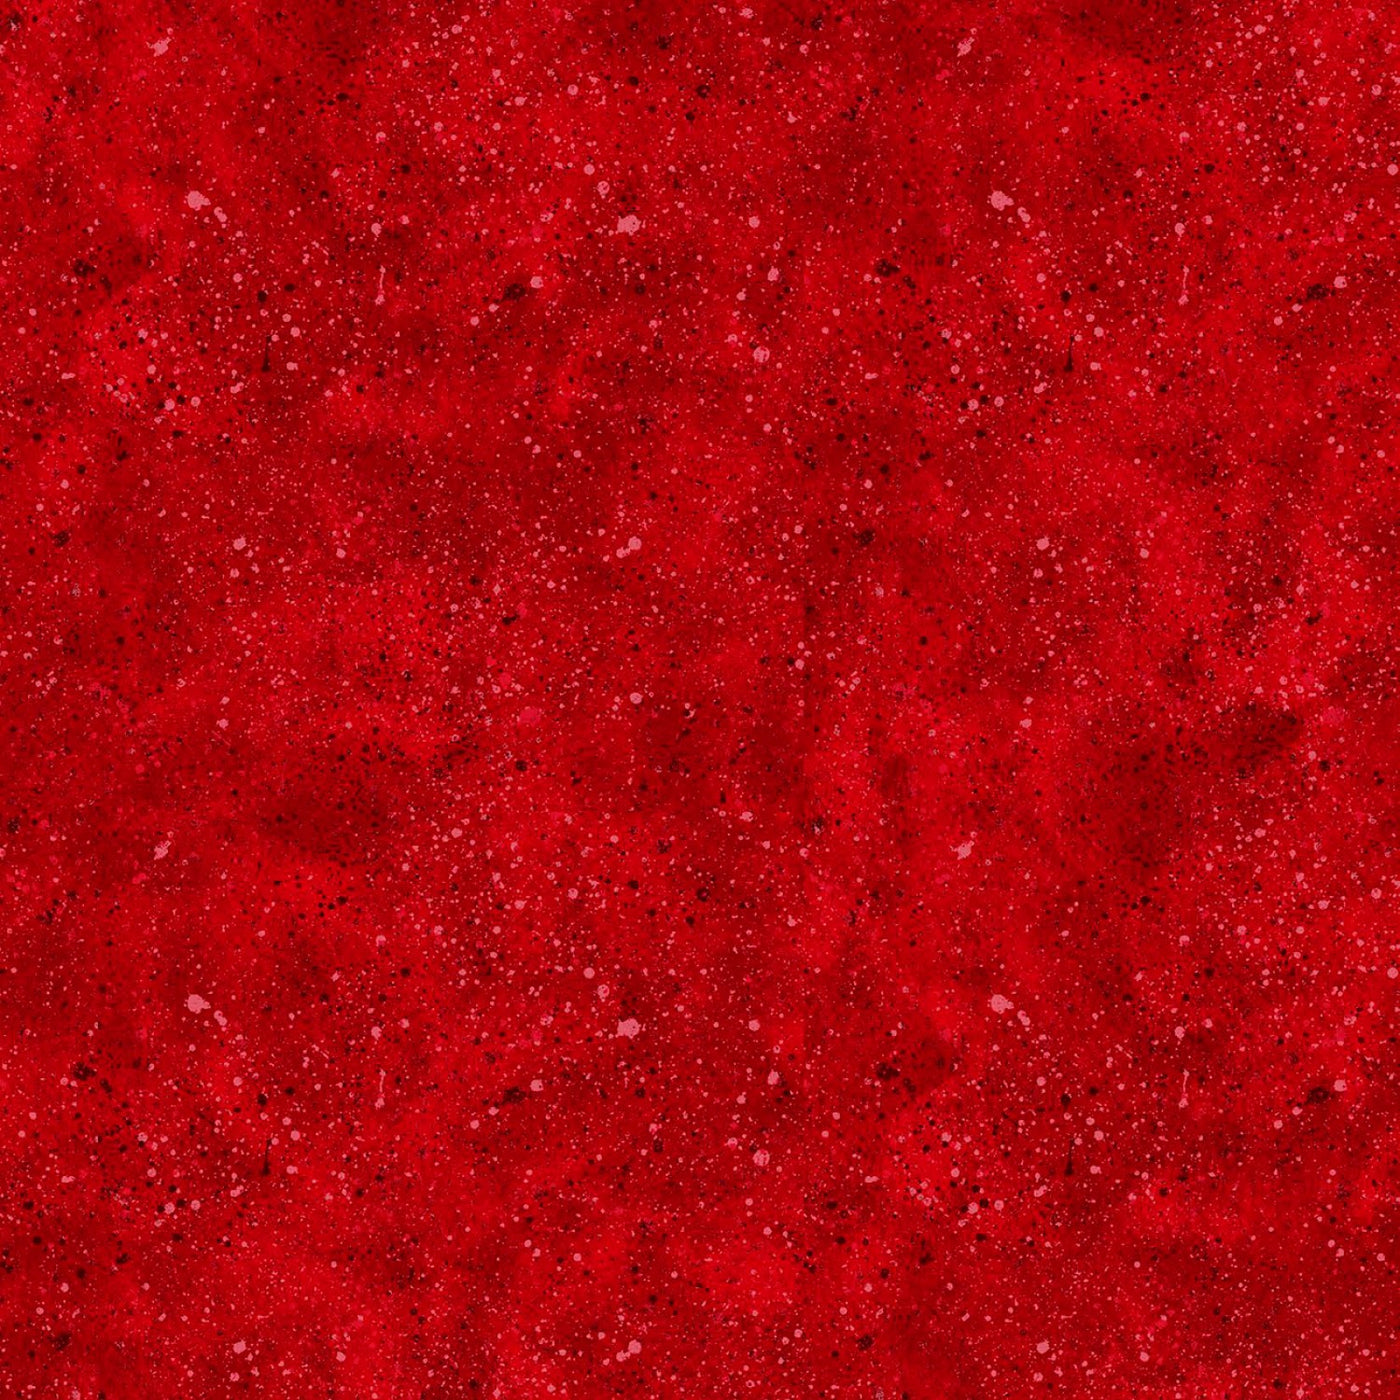 Red Splatter baksidestyg 270 cm brett /108 inch - pr 50 cm